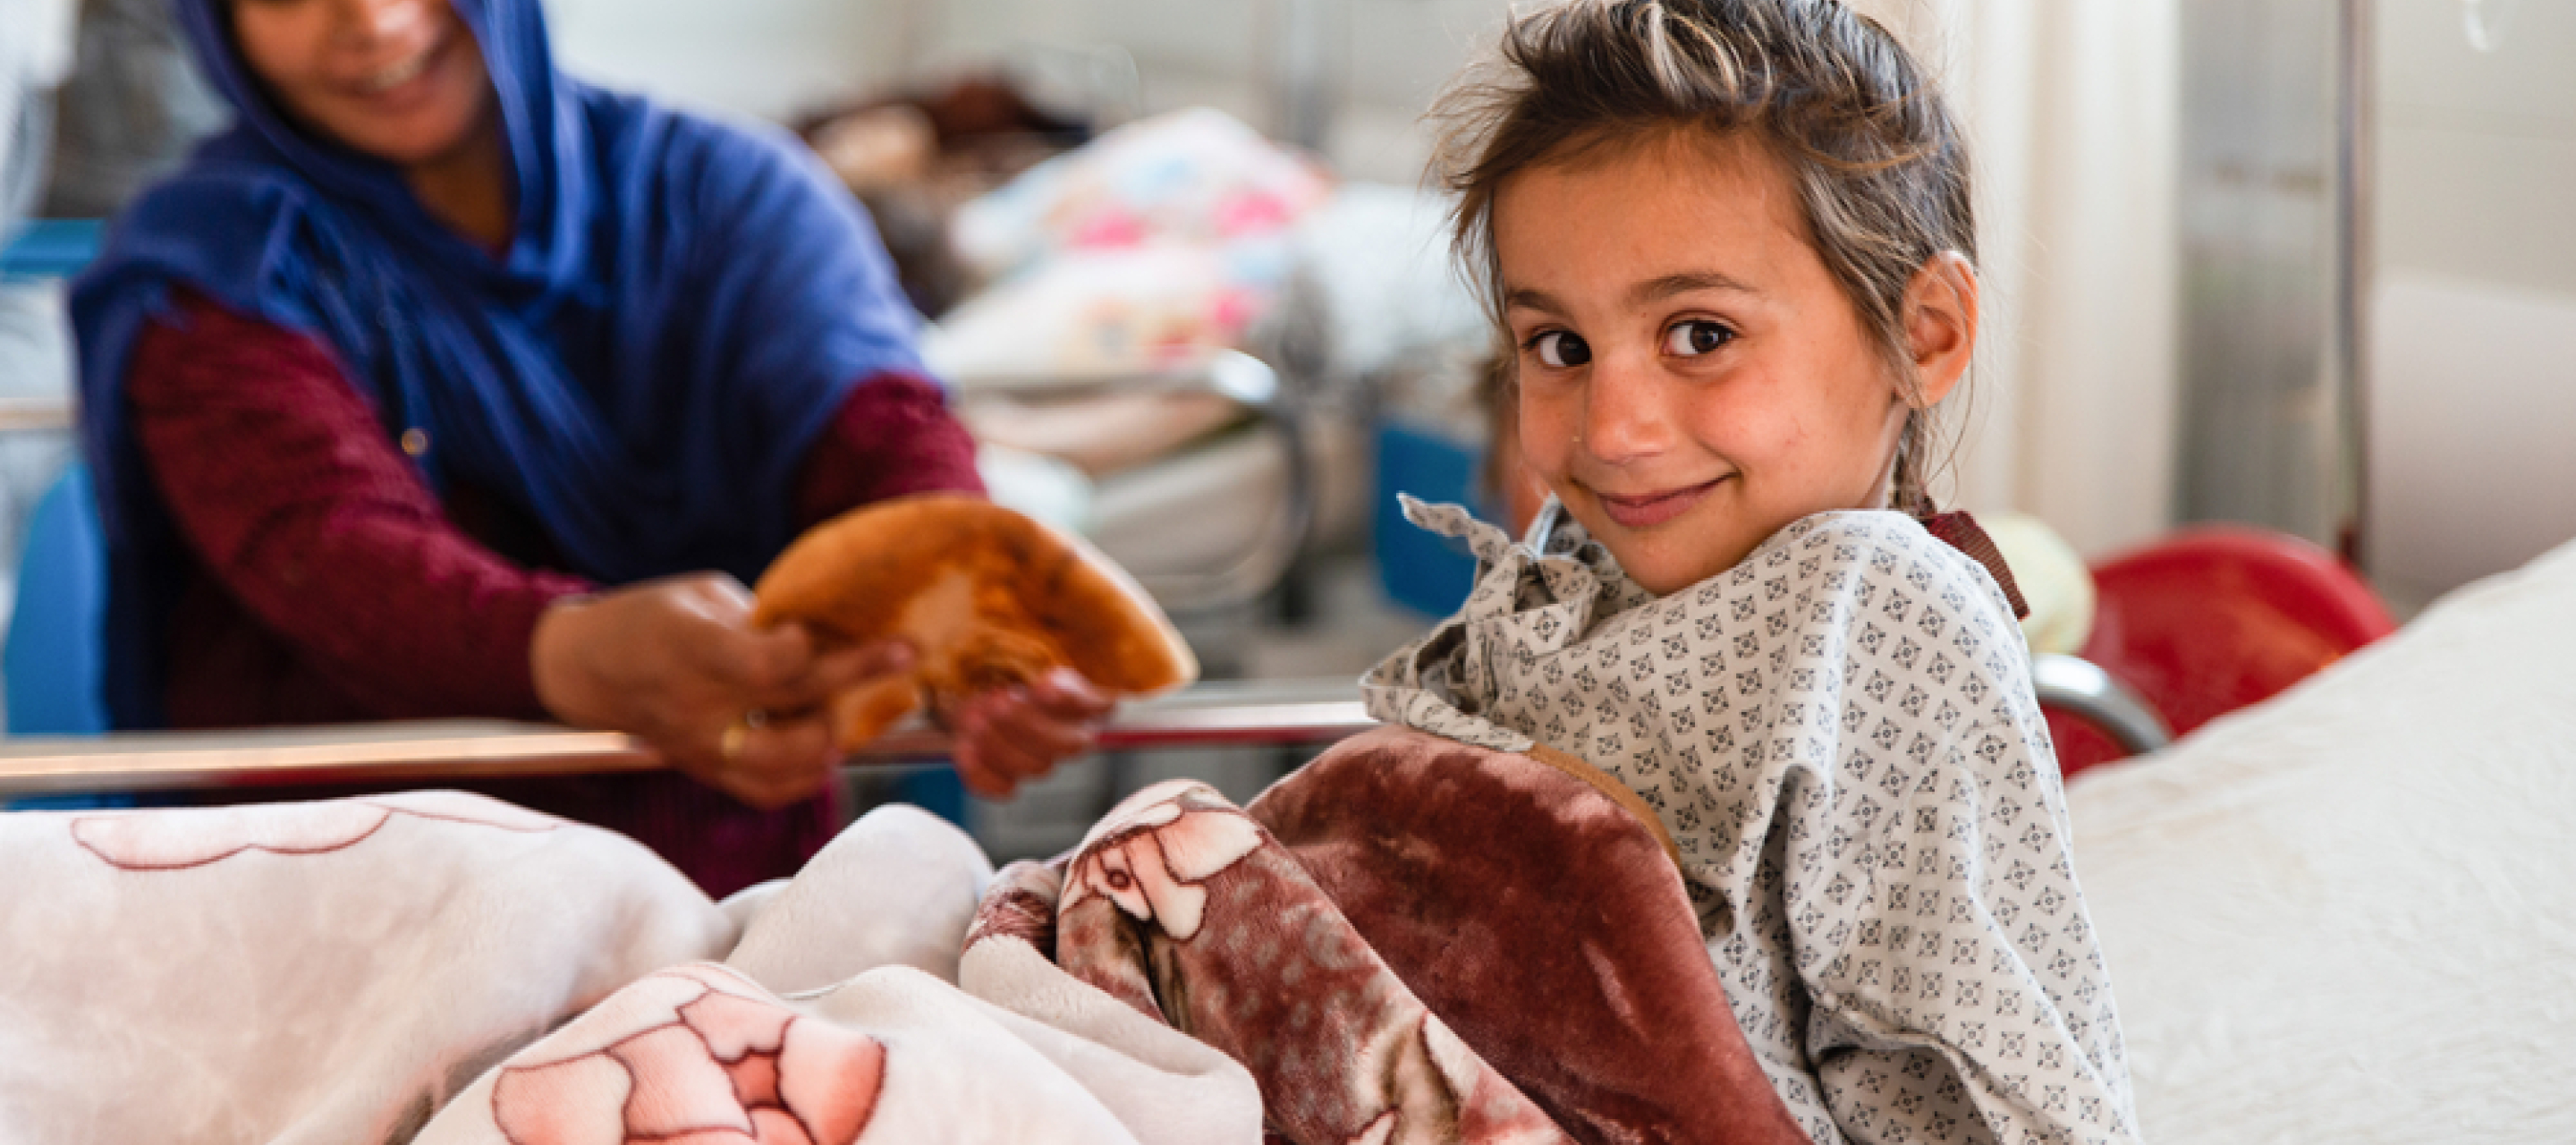 Spenden für Kinder: Mutter reicht Tochter in Krankenbett Brot